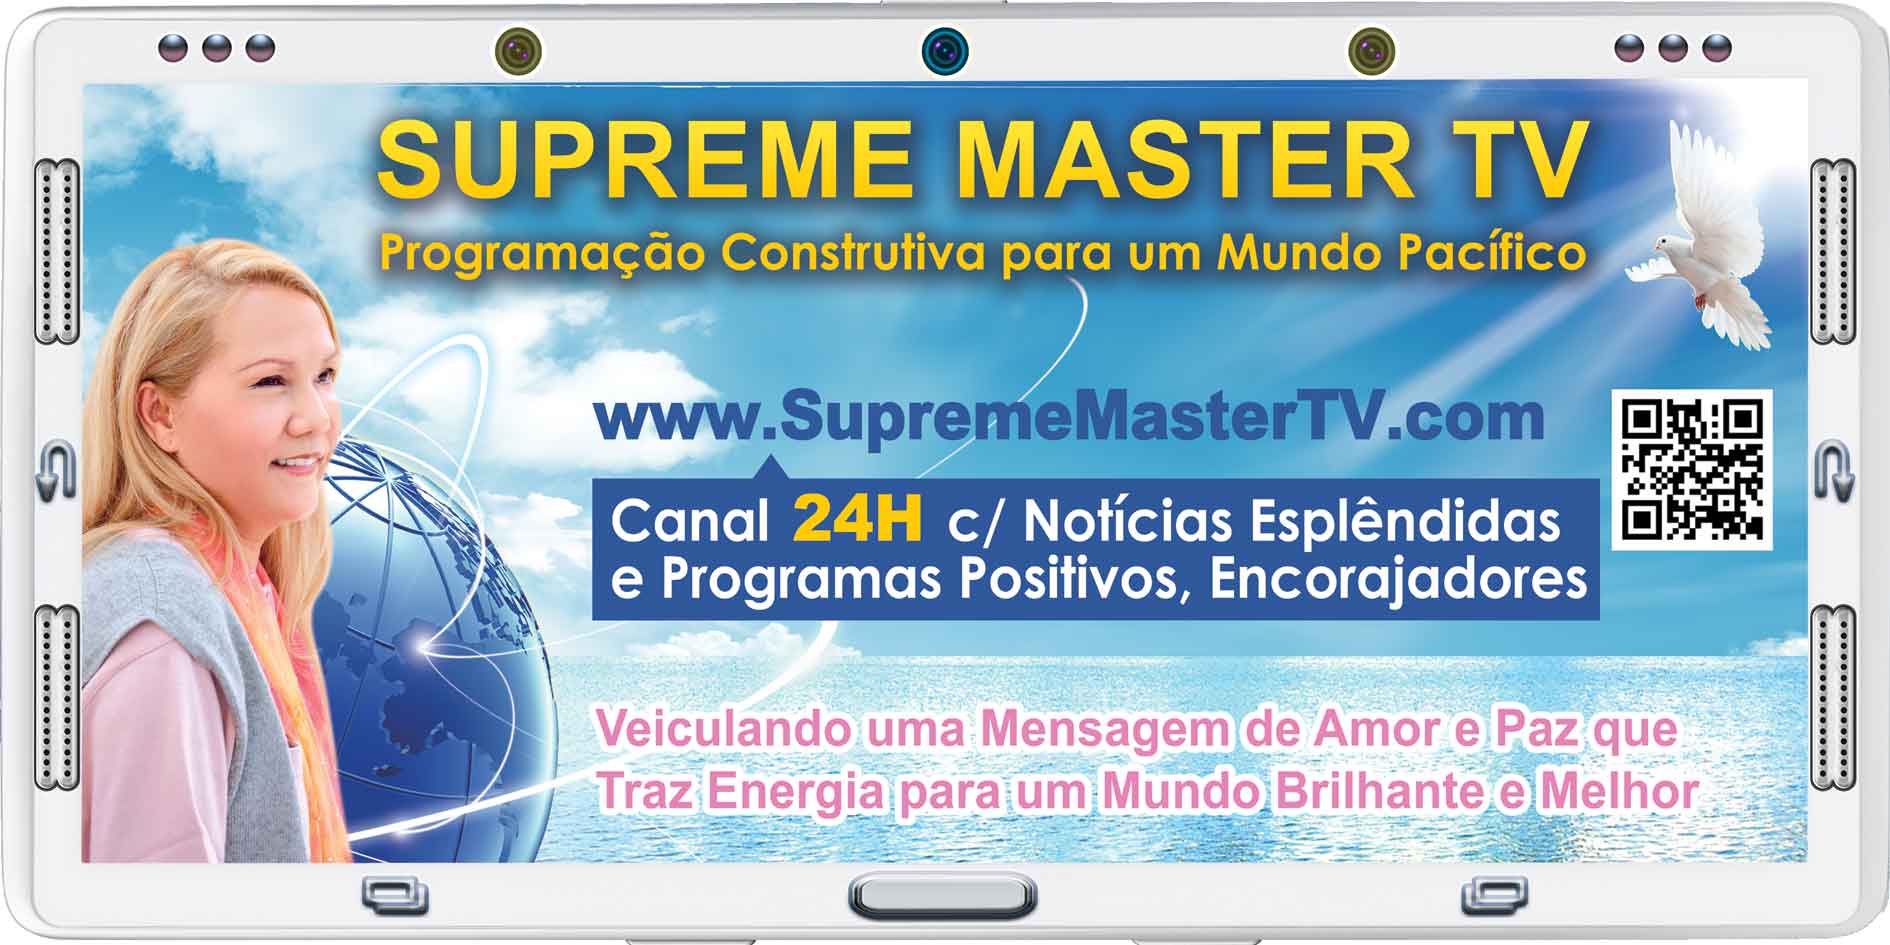 (dentro da tela do aparelho de borda grossa) Supreme Master TV - SupremeMasterTV.com